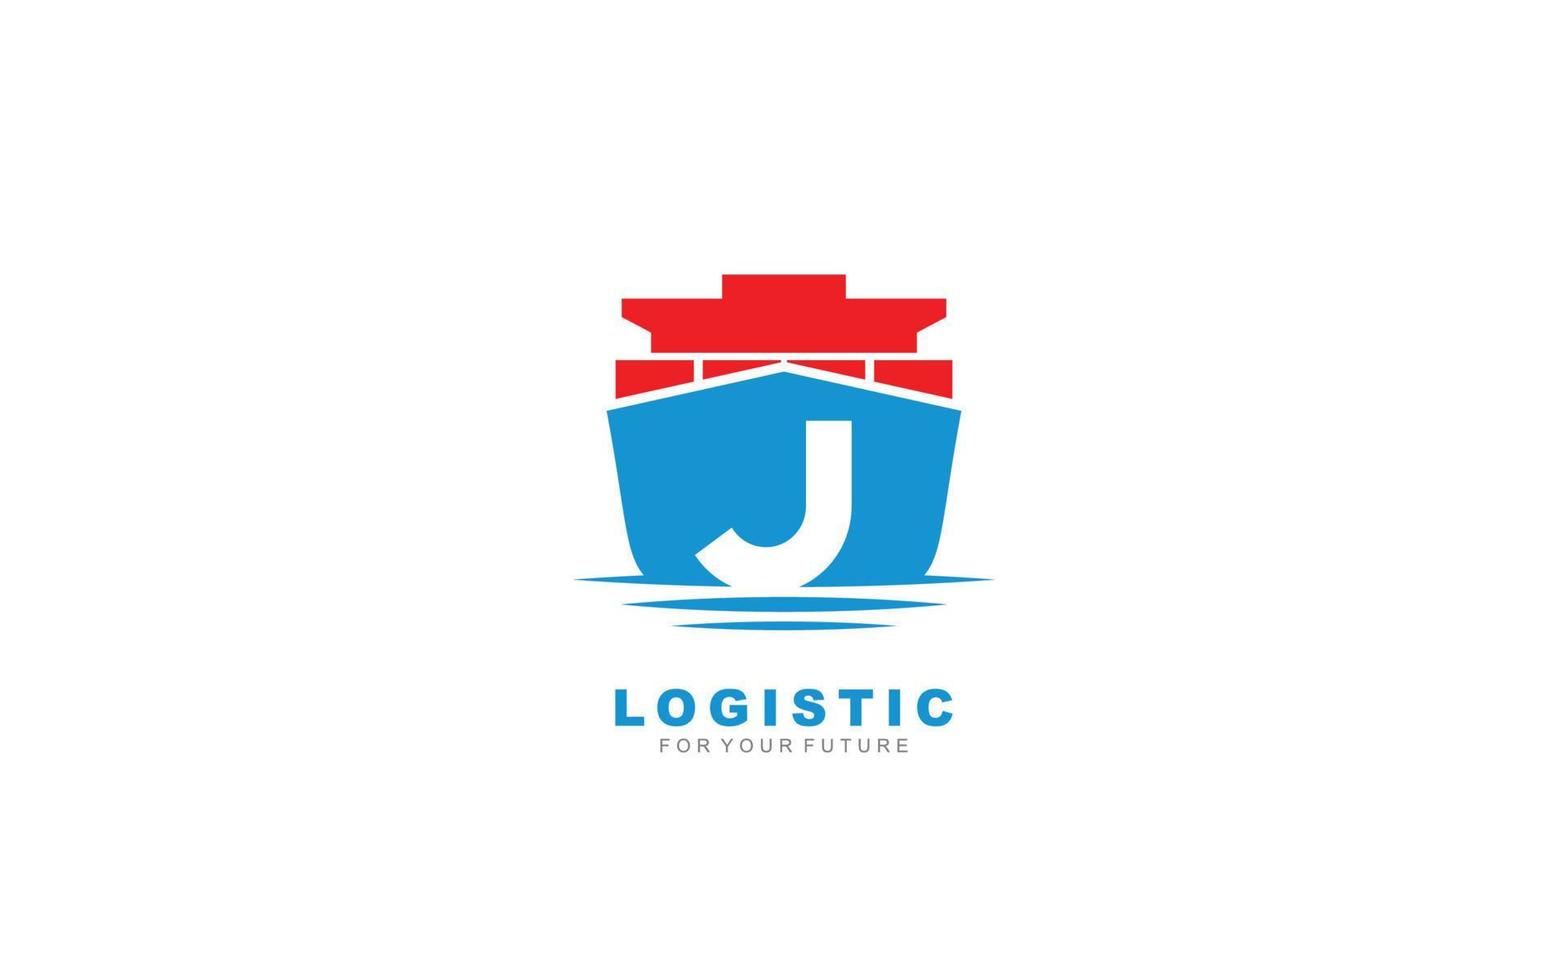 j logo logistique pour la société de marque. illustration vectorielle de modèle d'expédition pour votre marque. vecteur